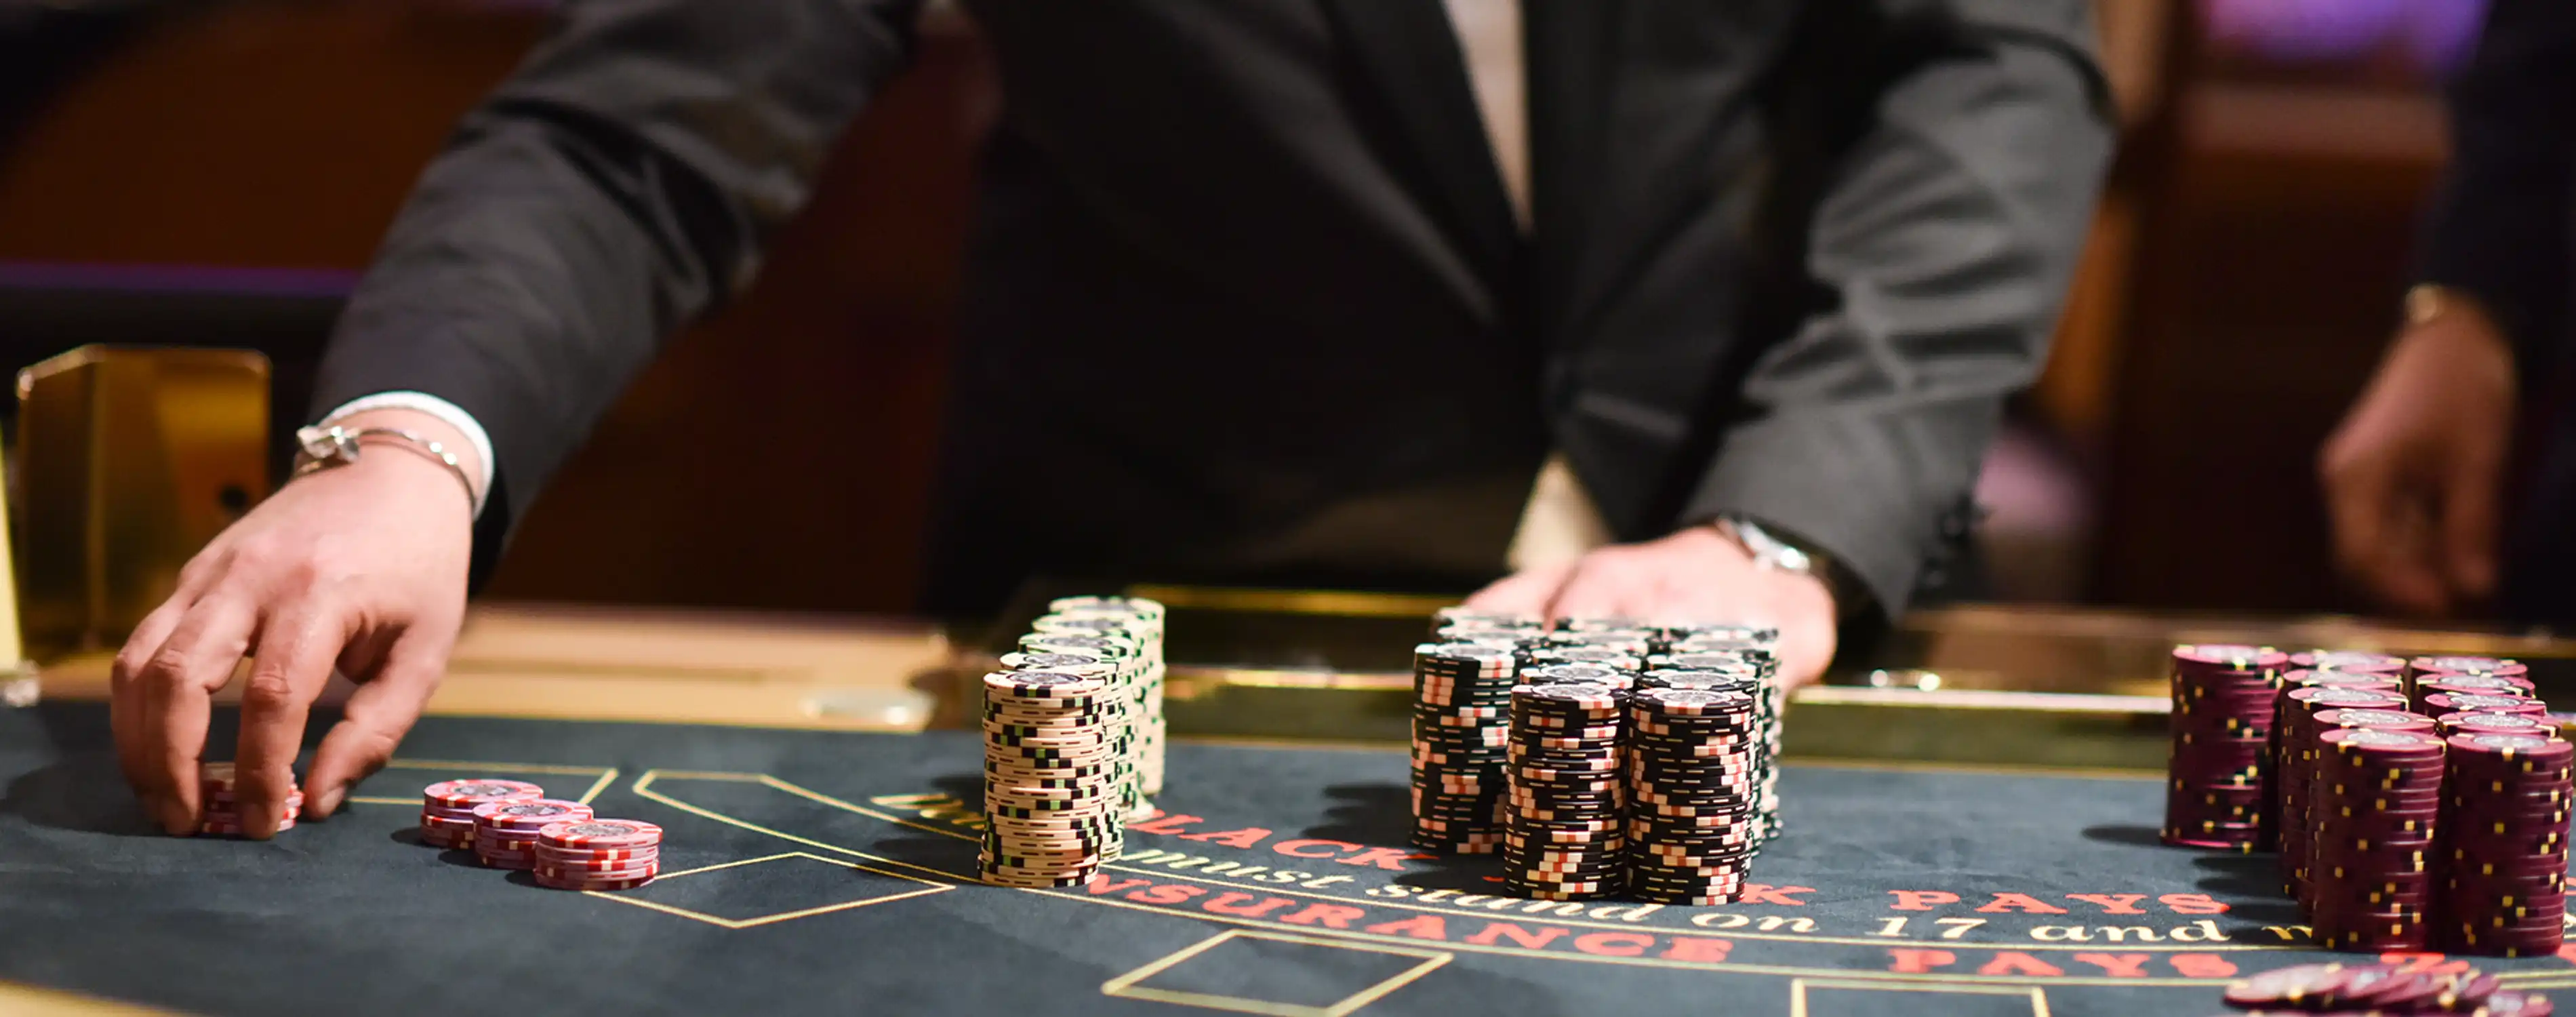 Online monte carlo casino бездепозитный бонус в российских казино